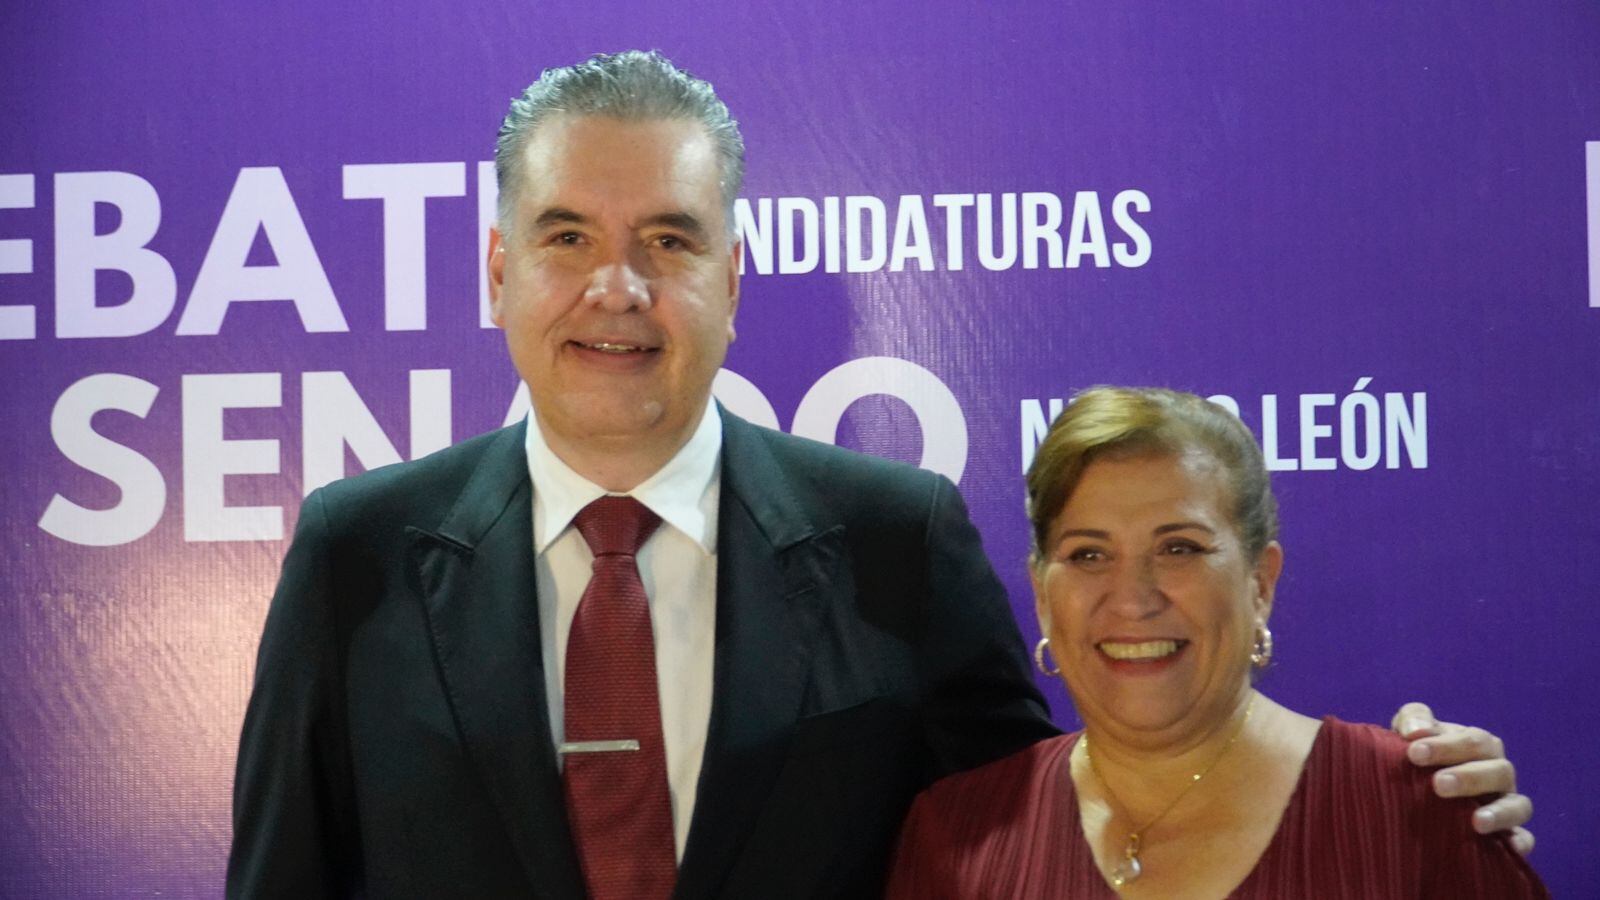 Waldo Fernández y Judith Díaz están satisfechos con su participación en el debate.